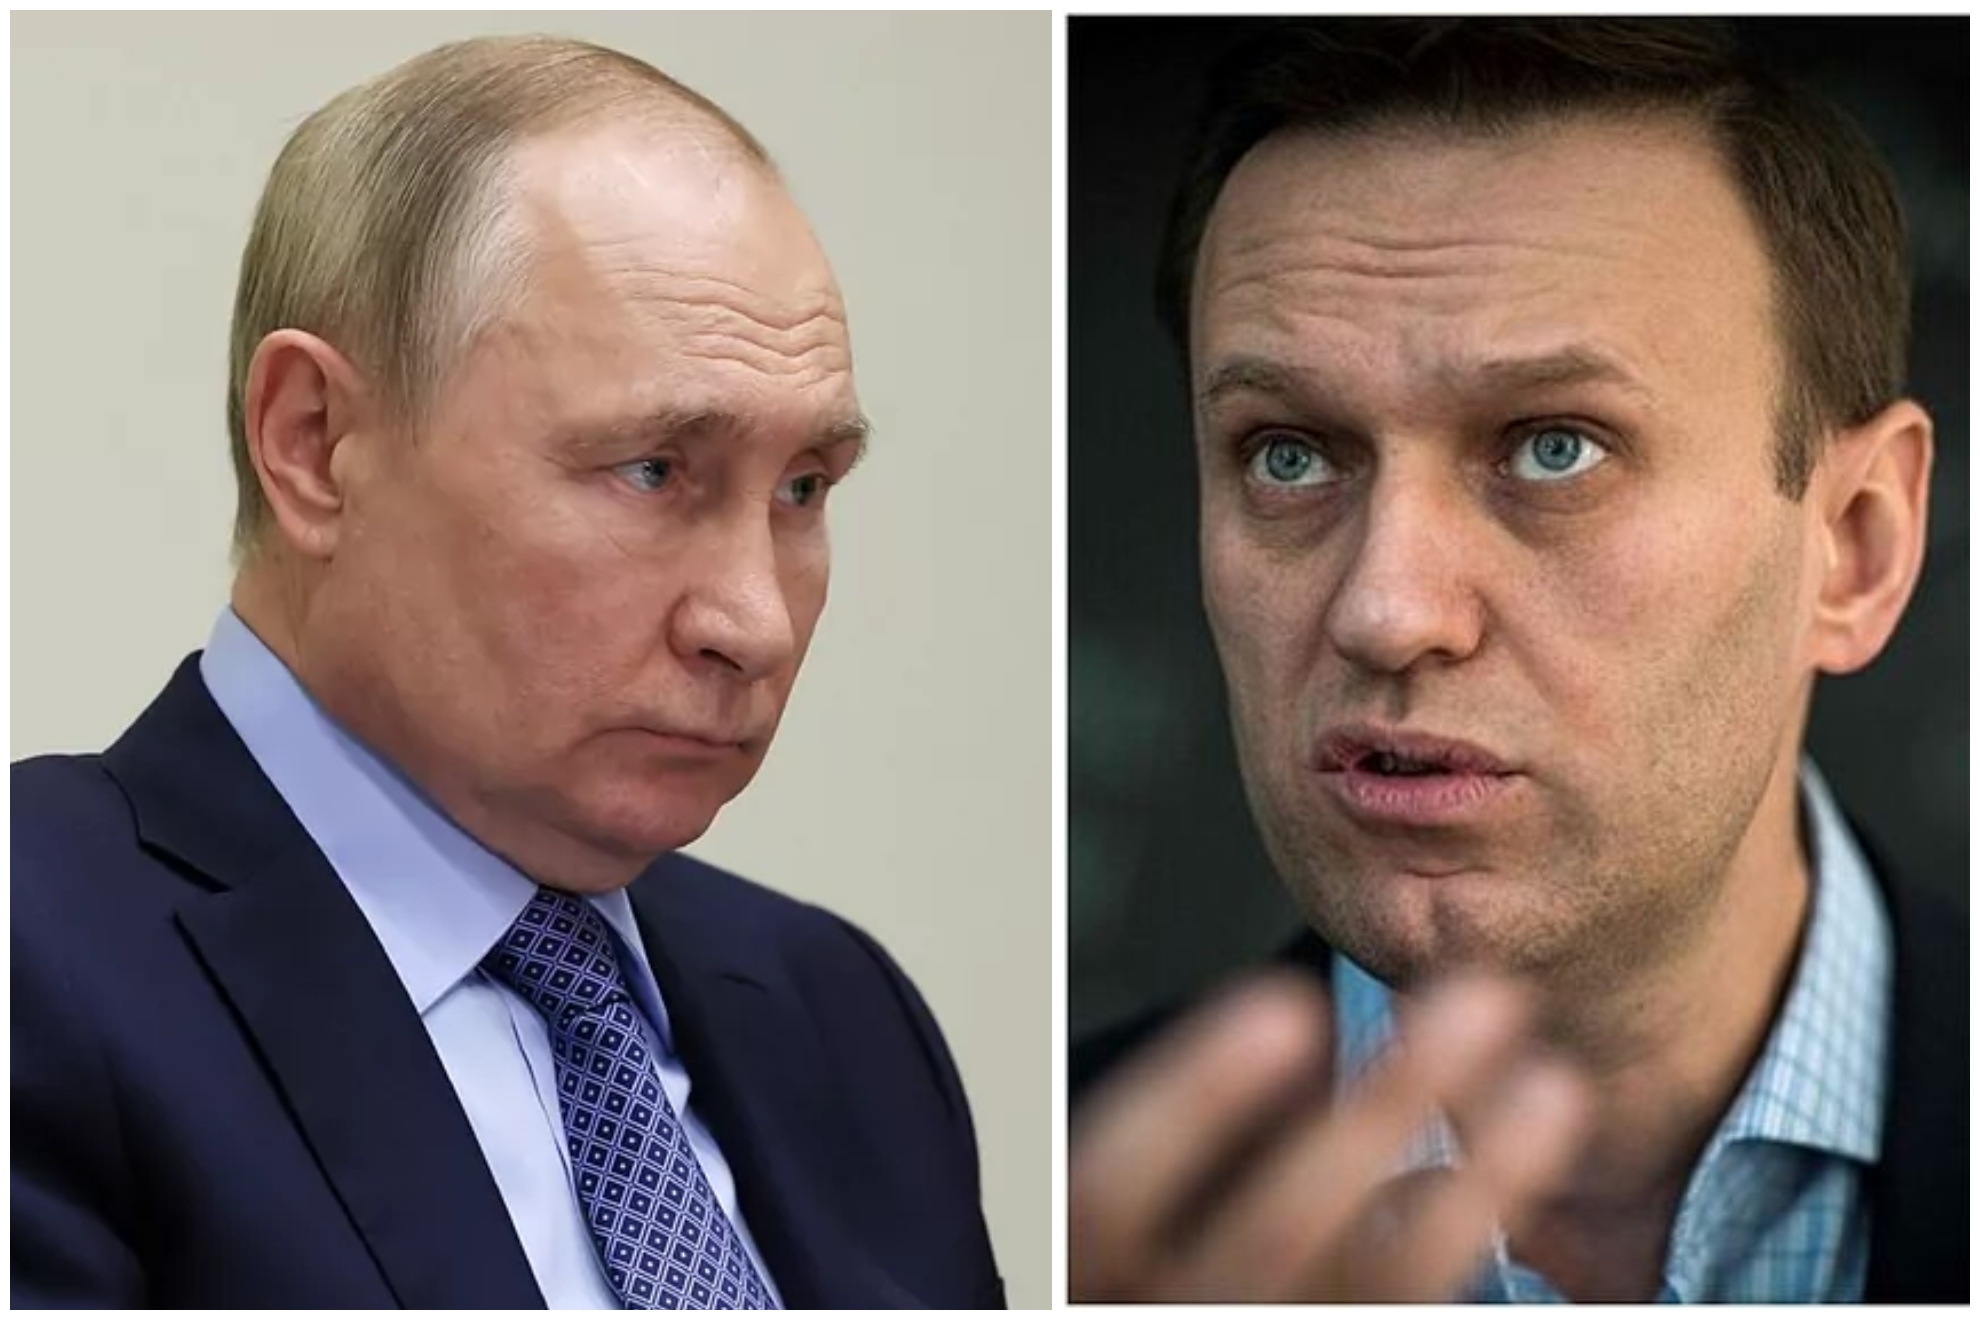 Condenan a 19 años más de prisión a Navalny, el opositor de Putin